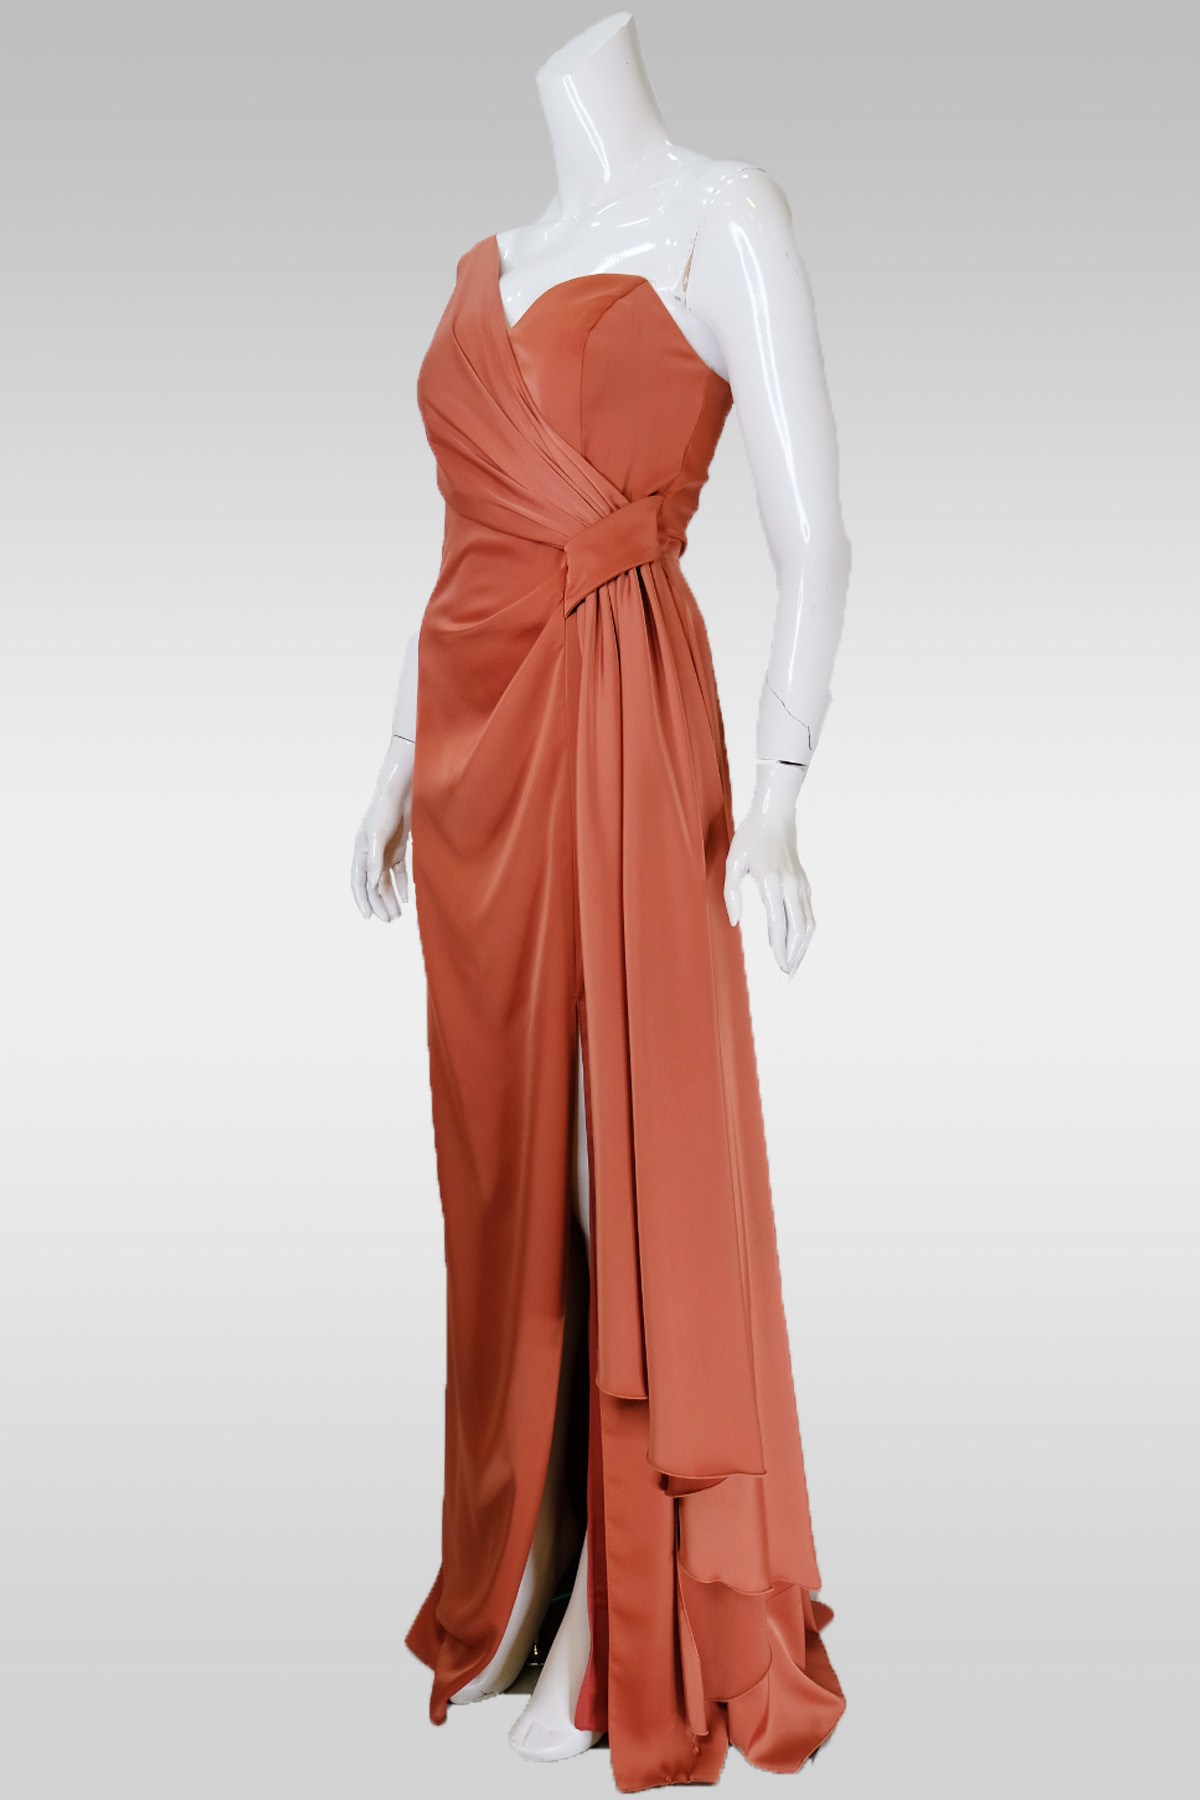 1044 - Doridorca Abiye Elbise Modelleri